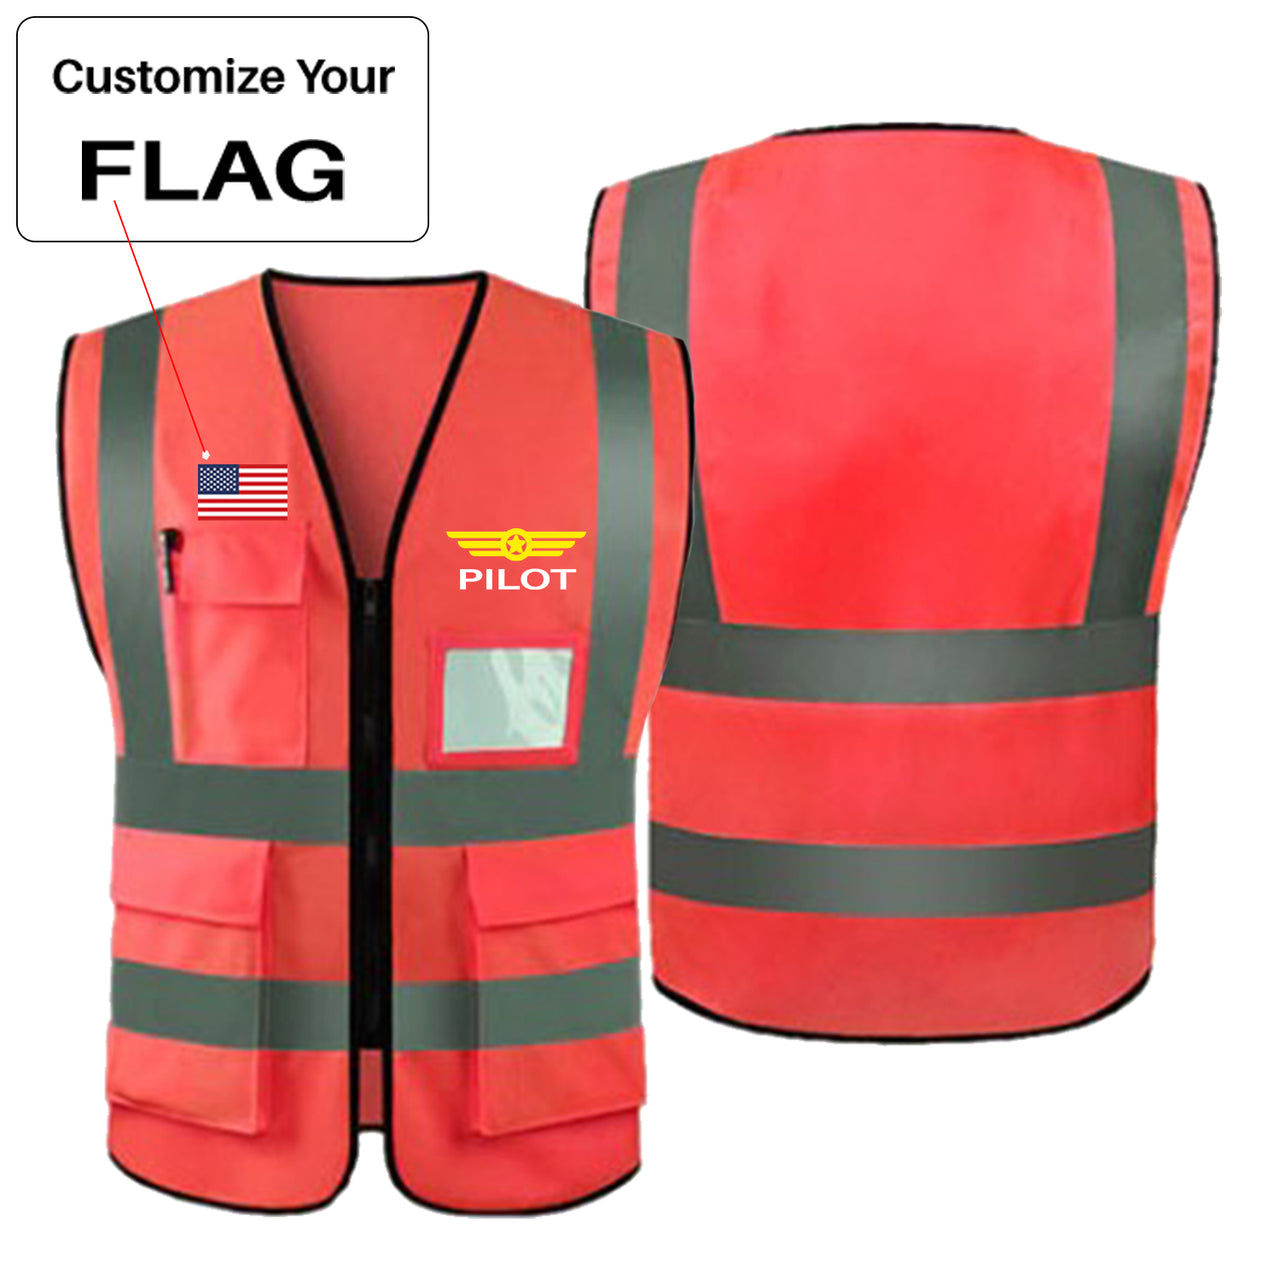 Custom Flag & Pilot Badge Designed Reflective Vests